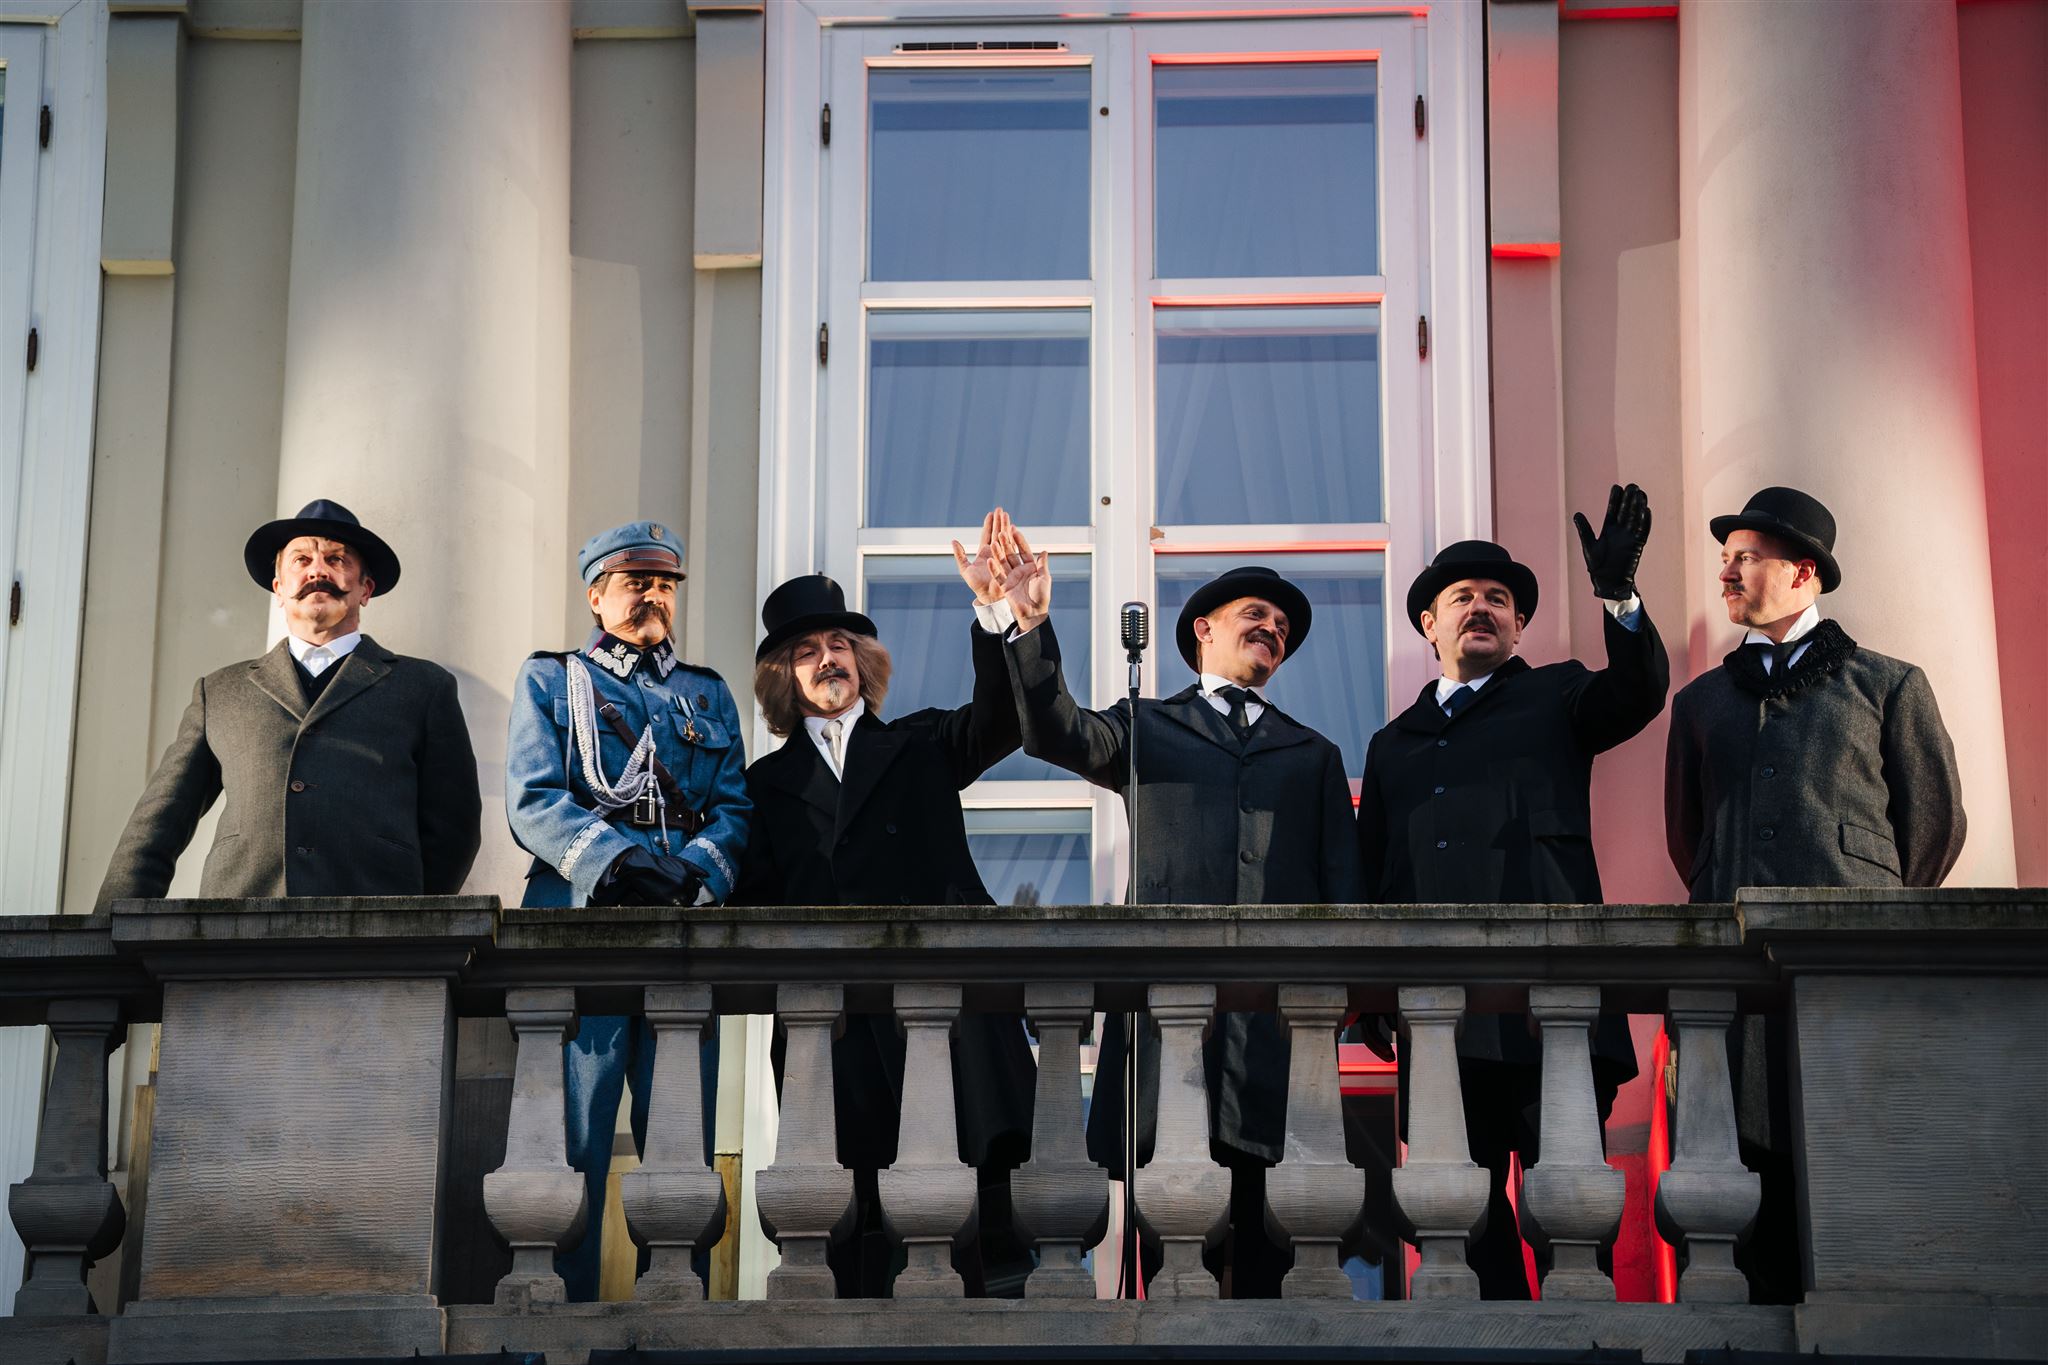 Sześciu mężczyzn w strojach z okresu międzywojennego macha z balkonu. Każdy z nich ucharakteryzowany jest tak, by przypominał jednego z ojców polskiej niepodległości.